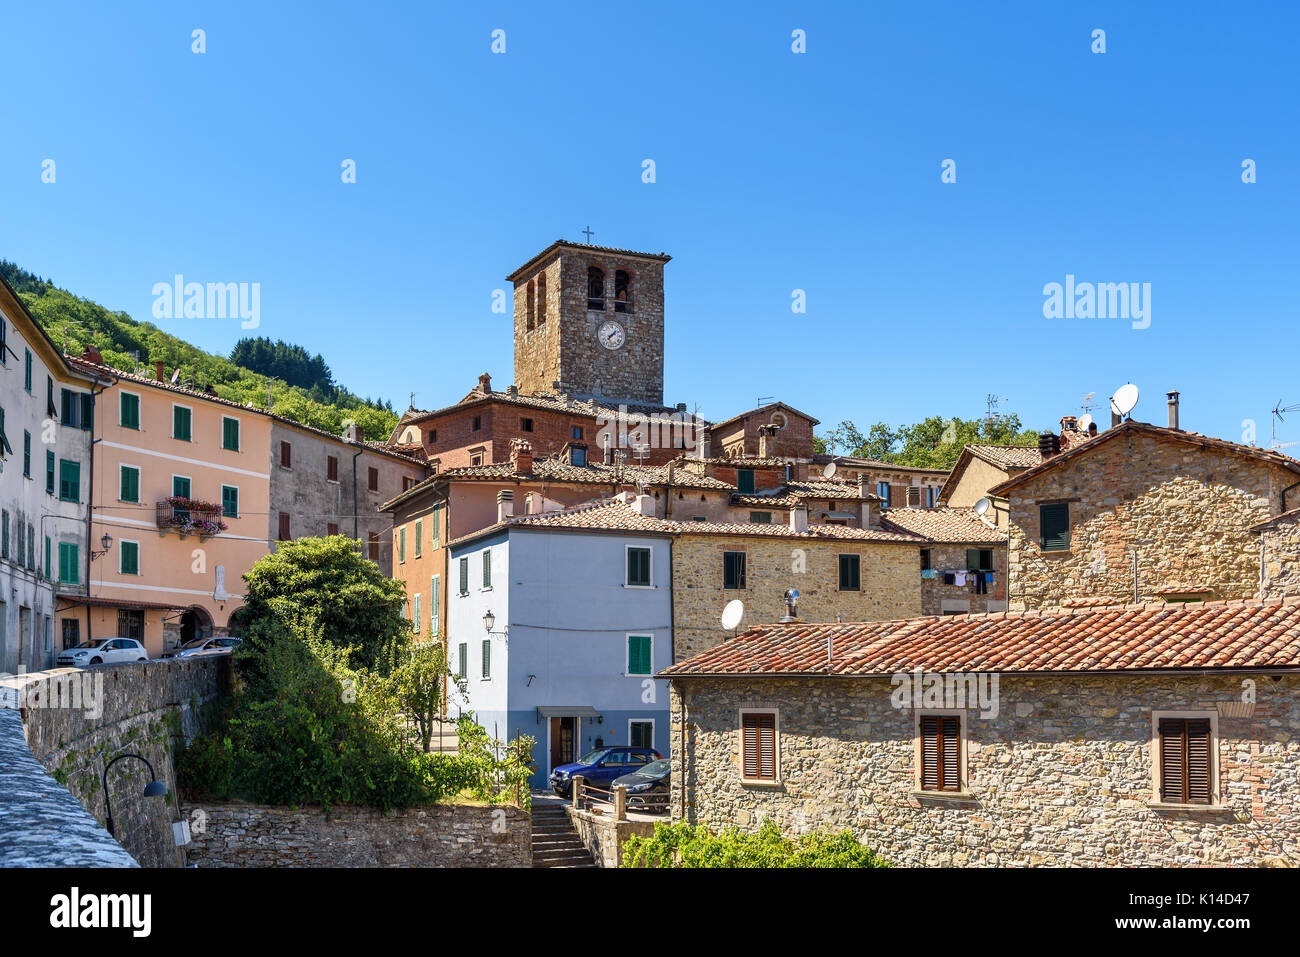 Villaggio toscano di Montieri, provincia di Grosseto, Italia Foto Stock